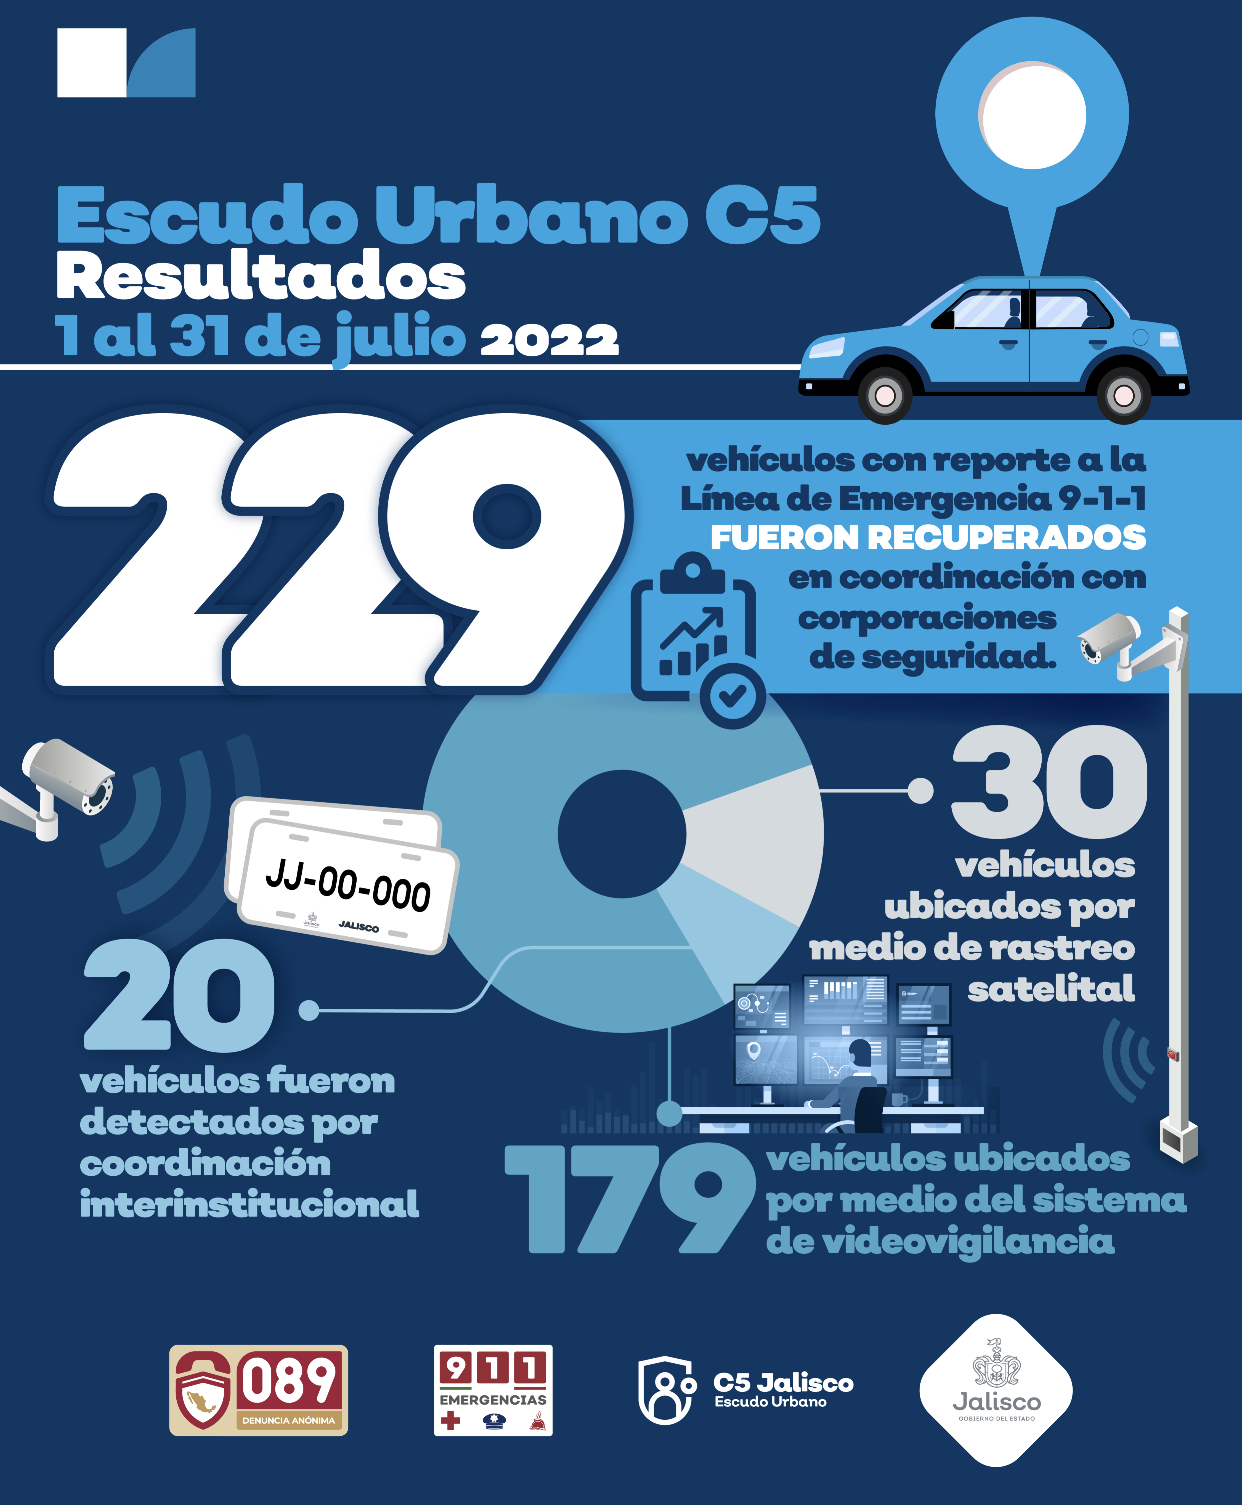 Durante el mes de julio, 229 vehículos fueron asegurados gracias a la estrategia de coordinación de Escudo Urbano C5 con corporaciones de los tres niveles de Gobierno